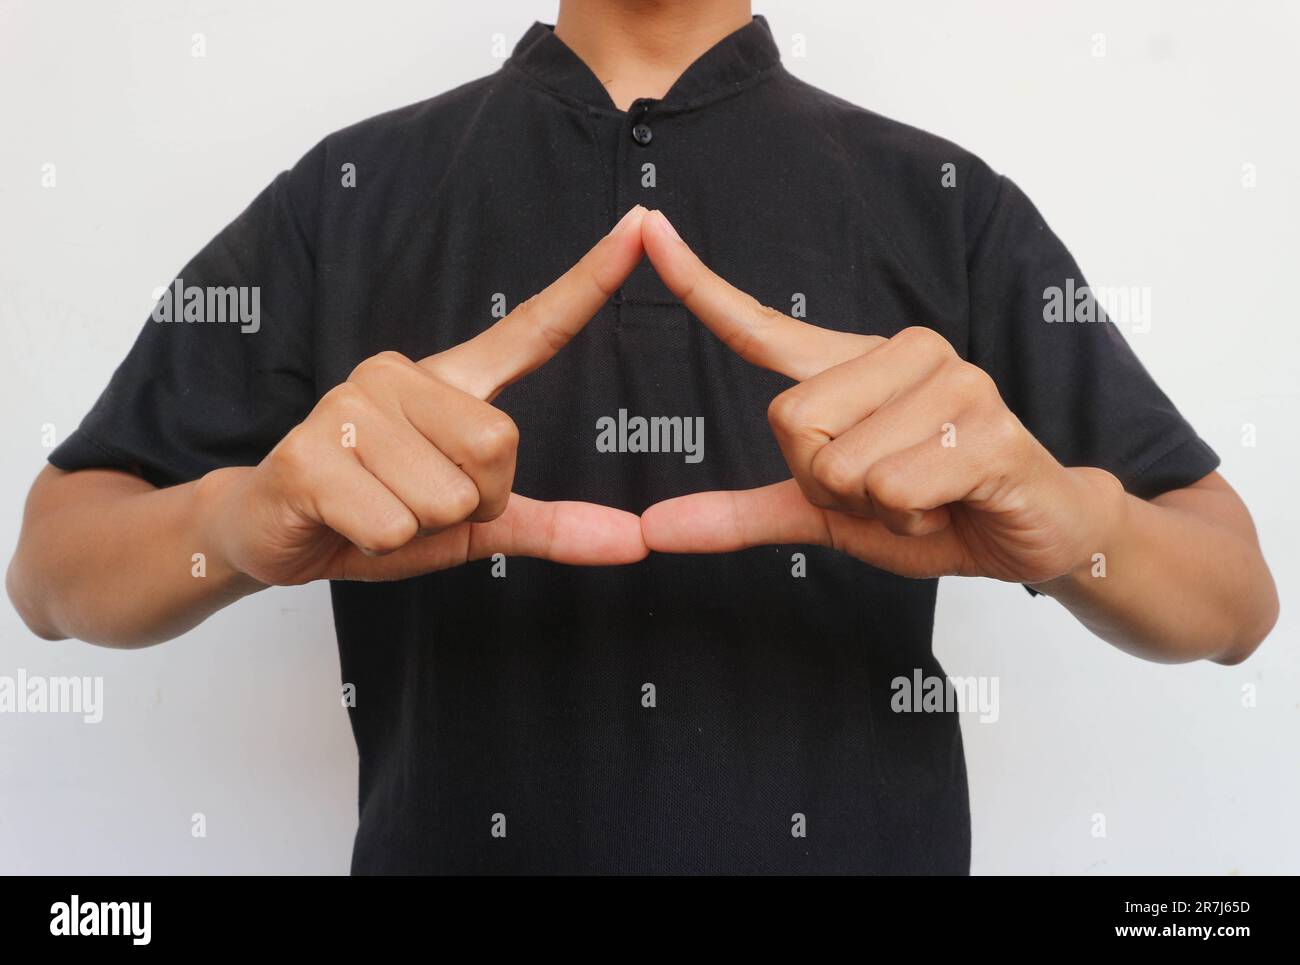 Der Mann mit dem schwarzen Hemd hob seine Hand, um die Dreiecksform zu zeigen. Stockfoto